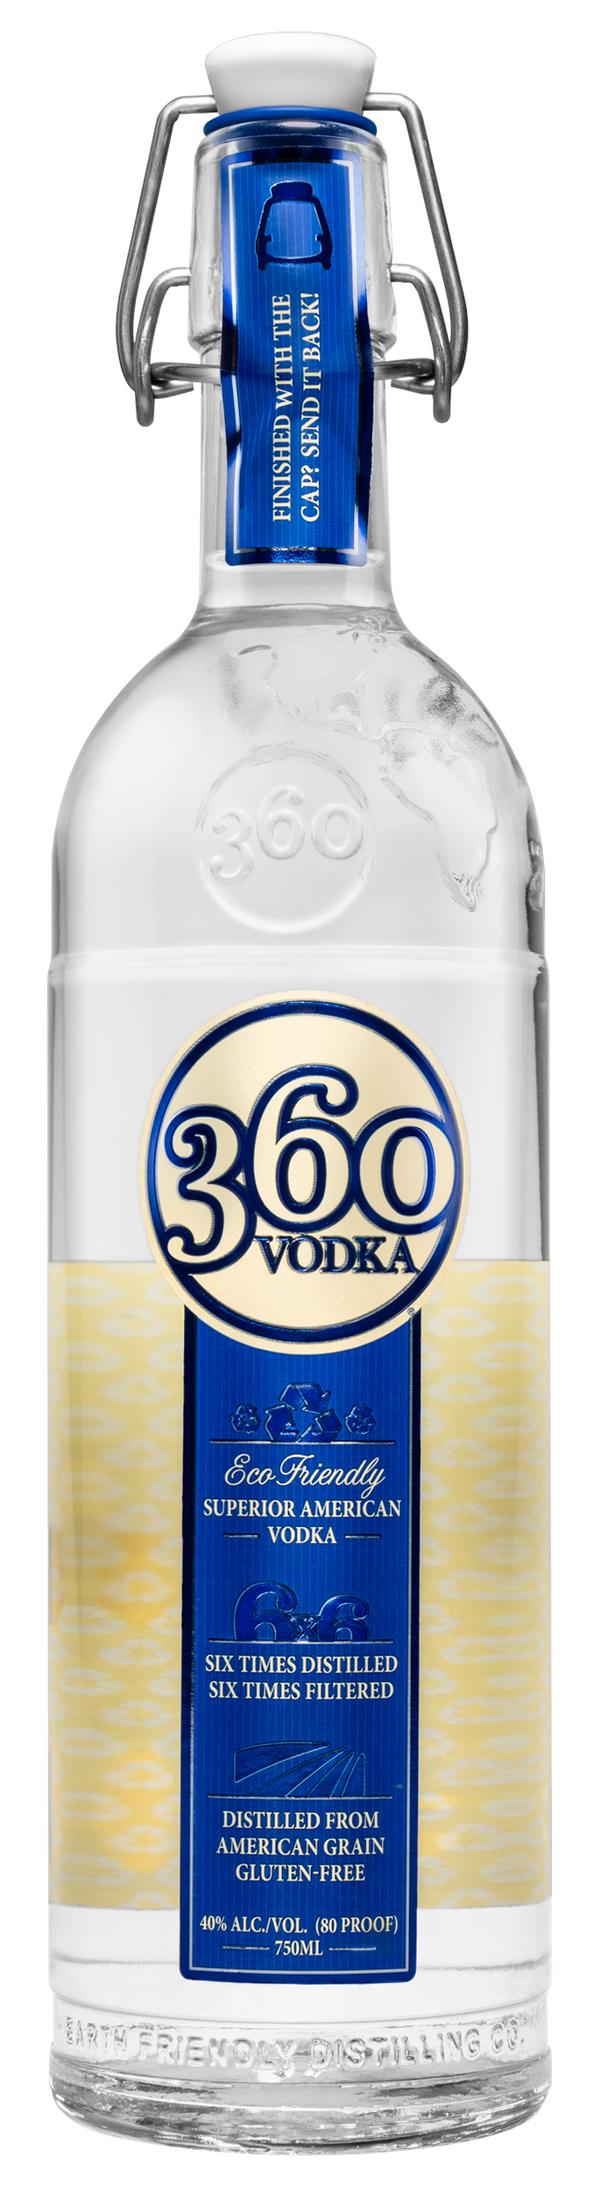 360 VODKA Vodka BeverageWarehouse